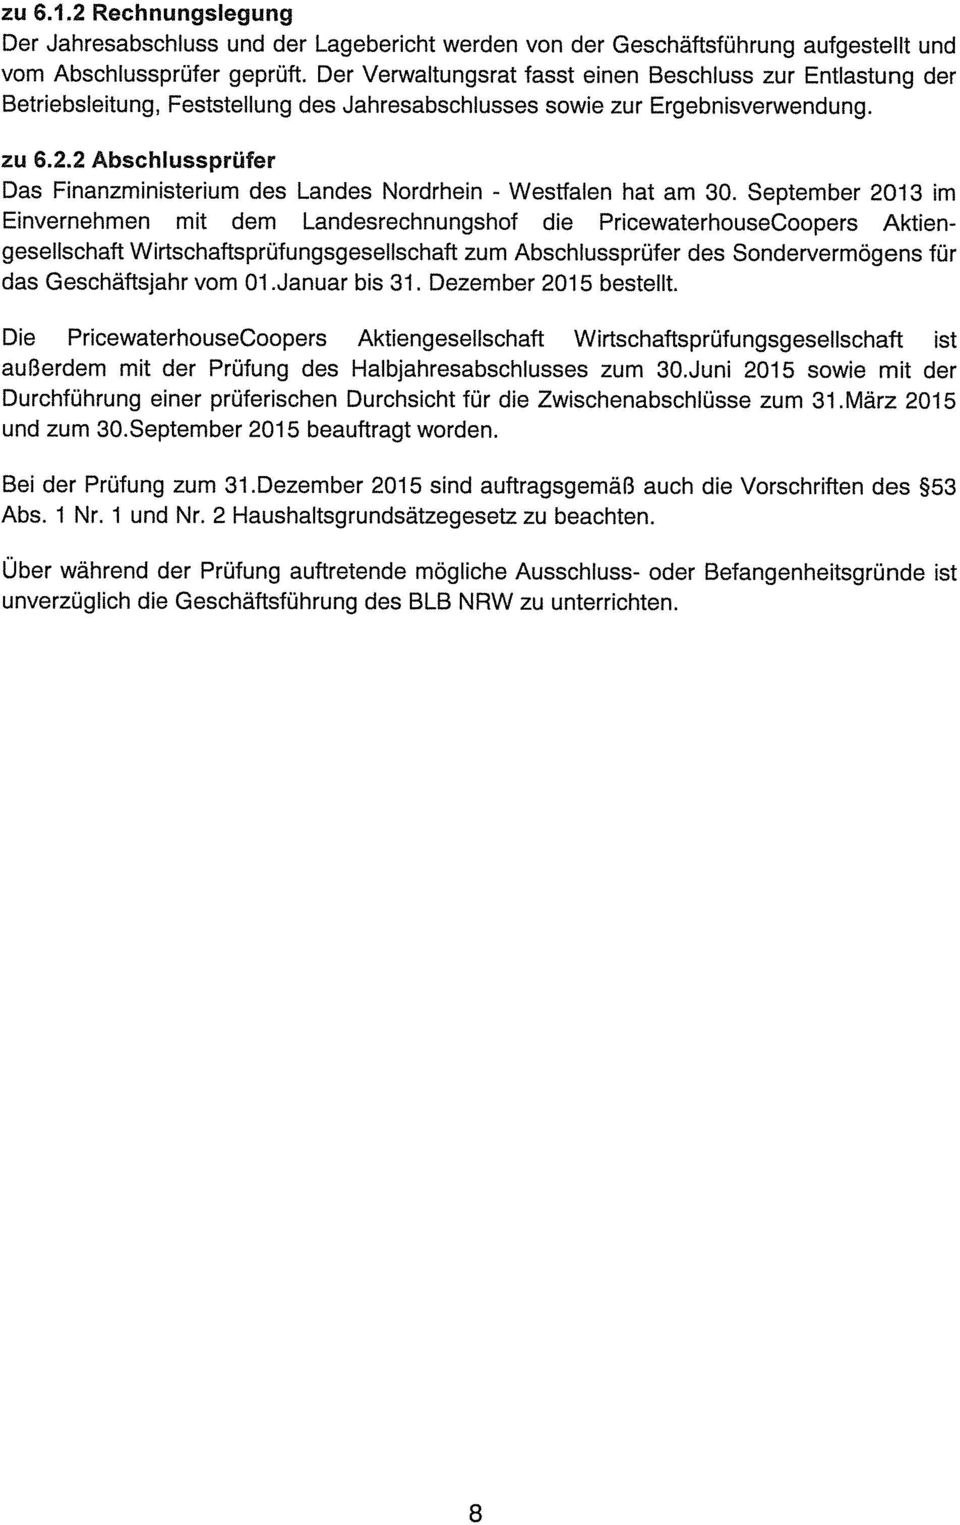 2 Abschlussprüfer Das Finanzministerium des Landes Nordrhein - Westfalen hat am 30.